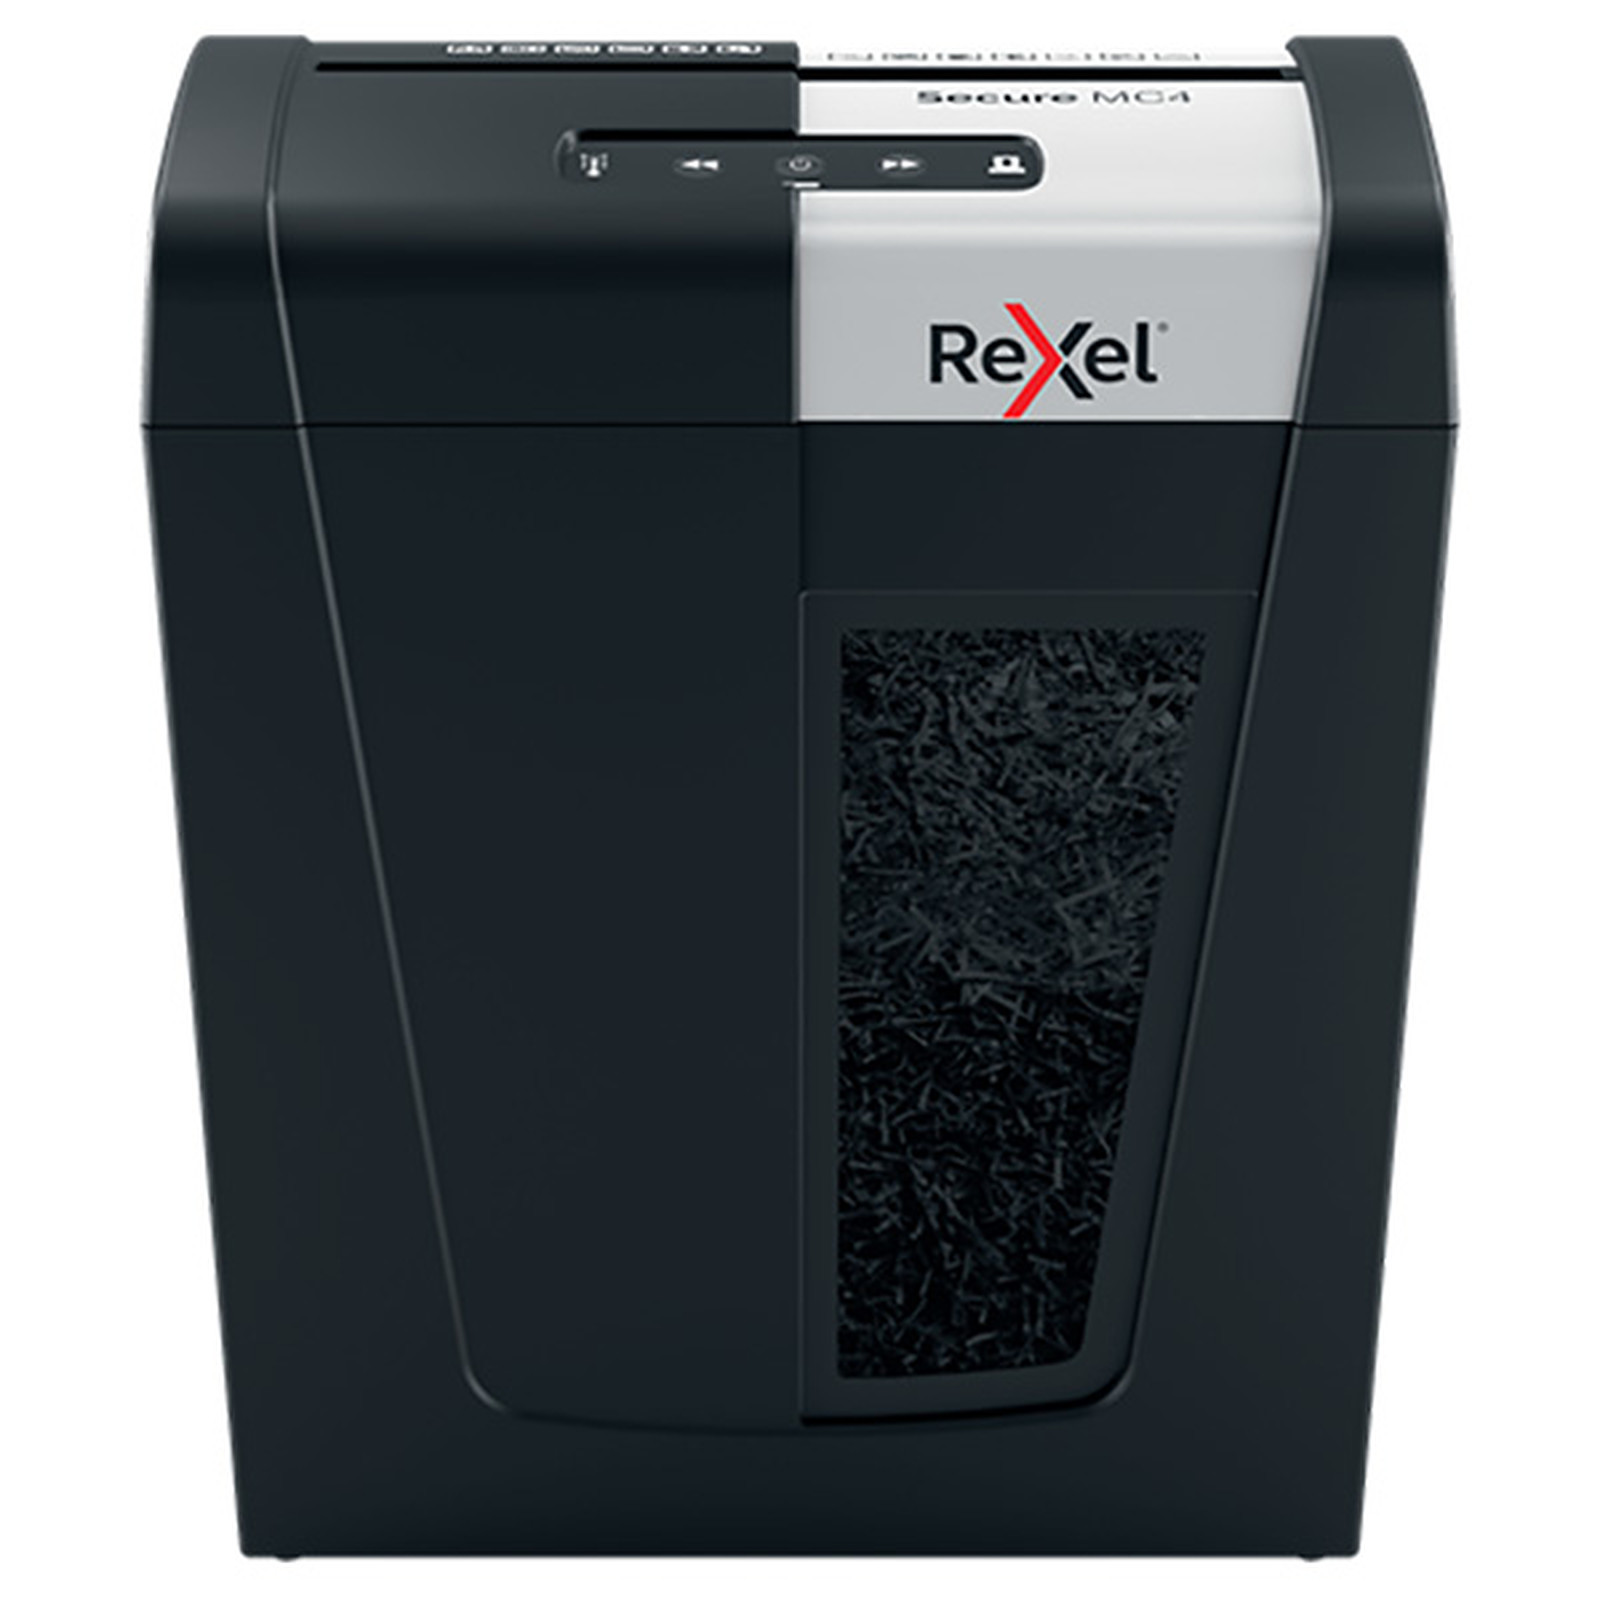 Rexel Destructeur Secure MC4 coupe micro - Destructeur de documents Rexel